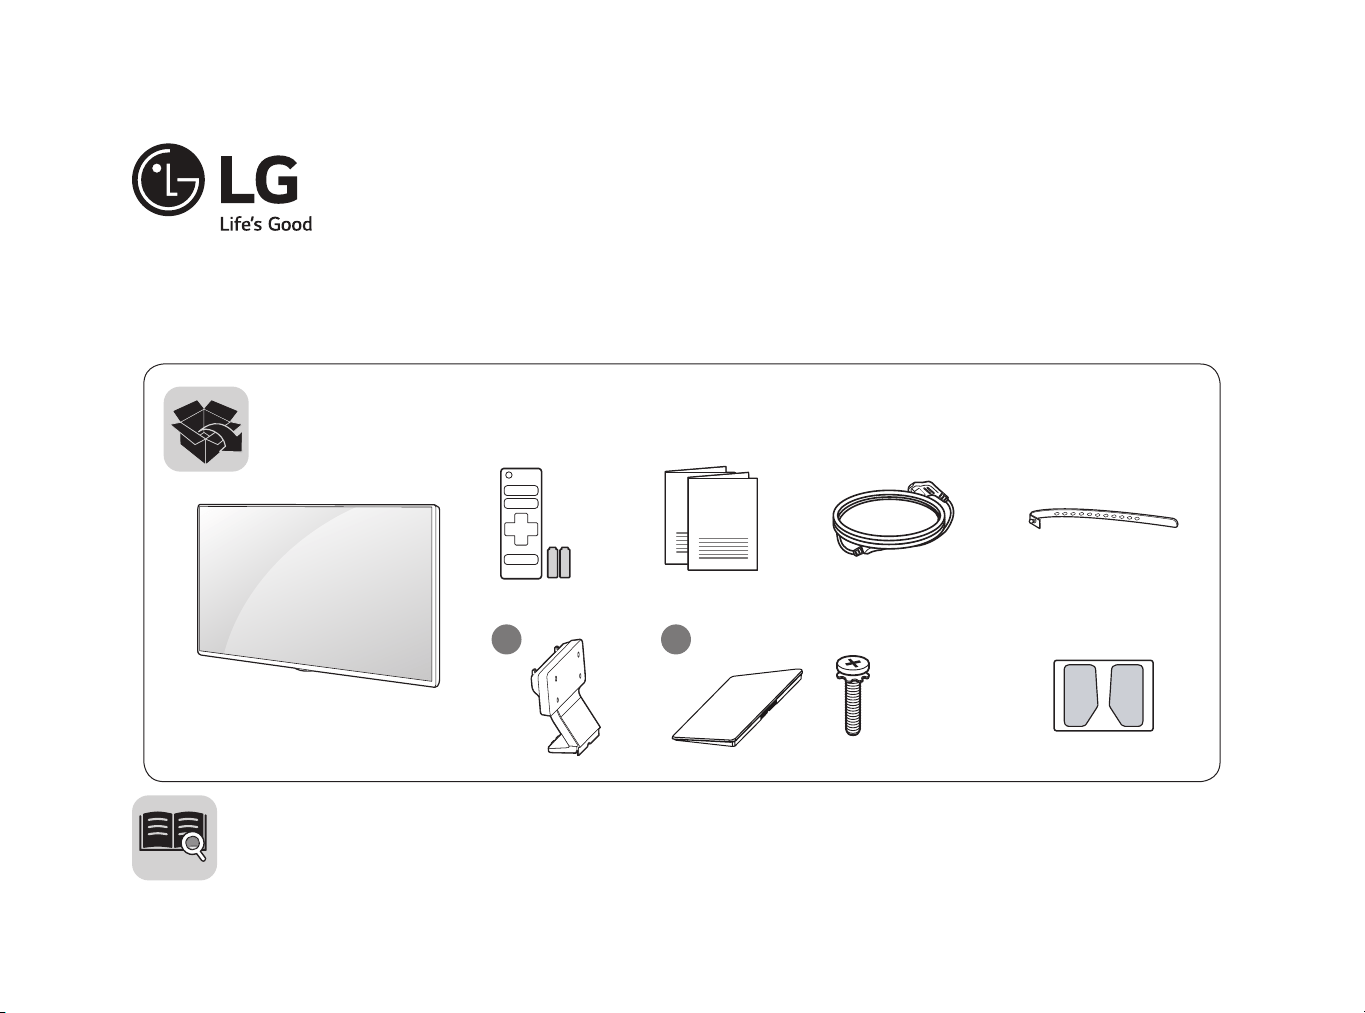 LG 40LH5300: 40-inch Full HD LED TV